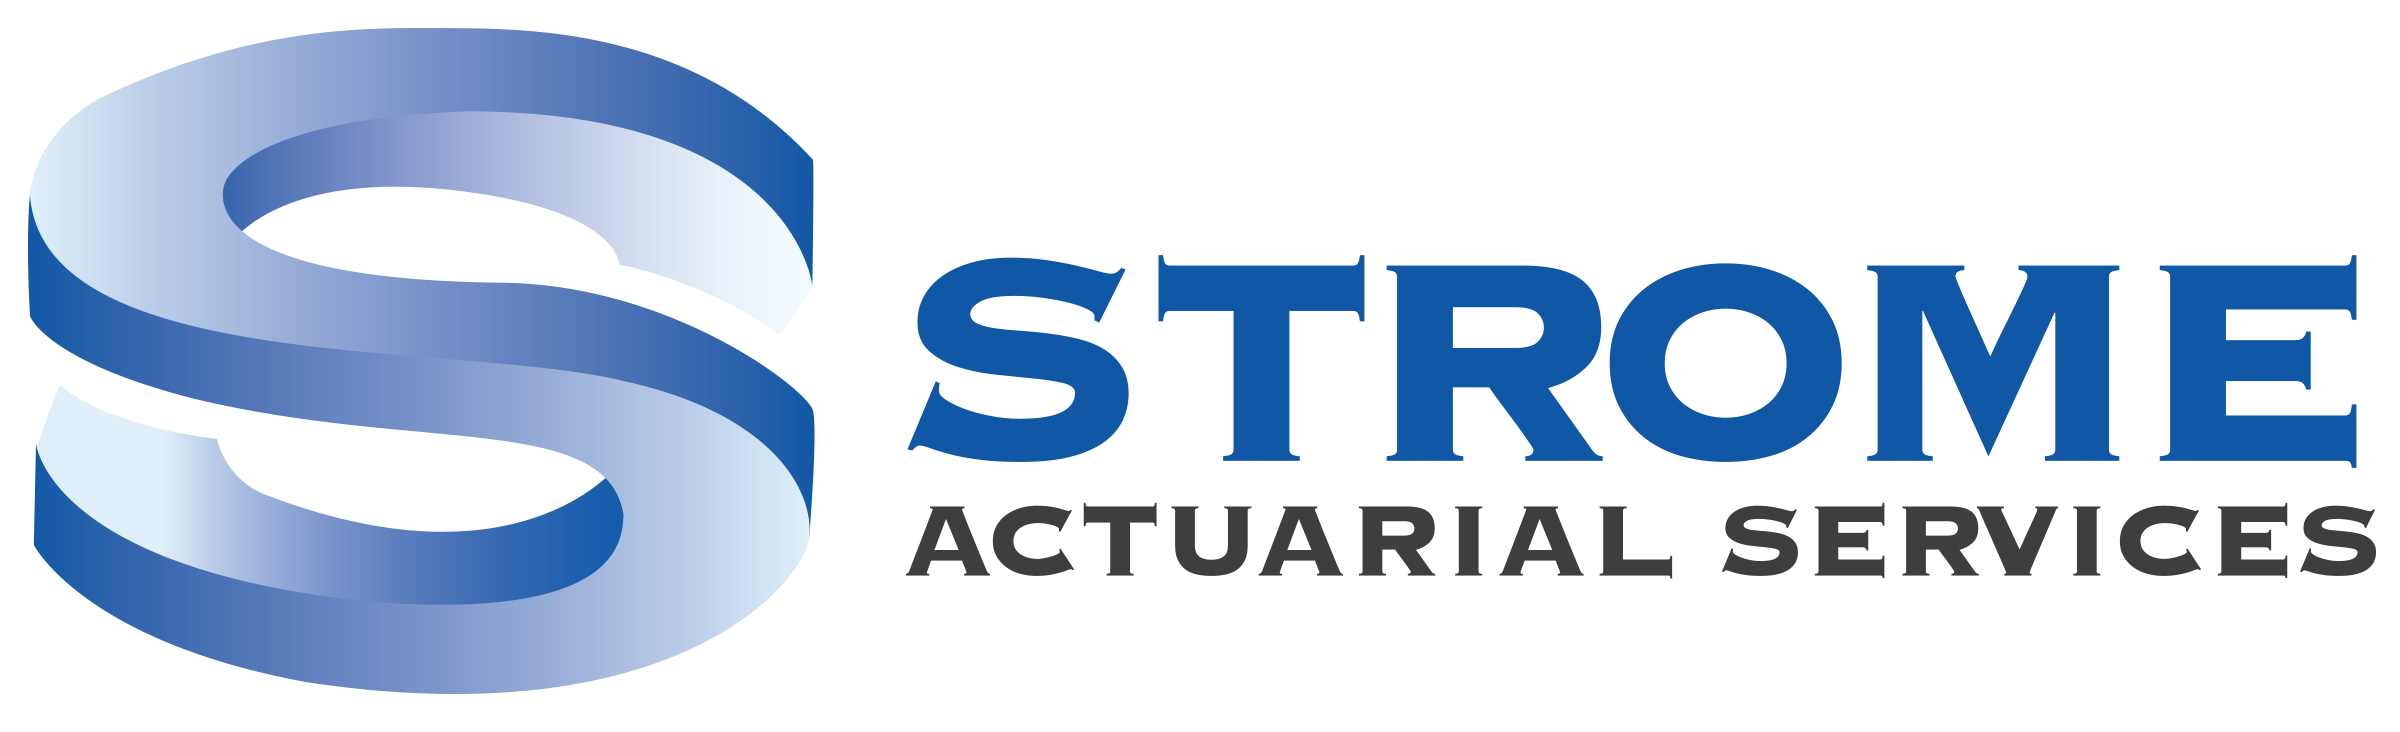 Strome Actuarial Services